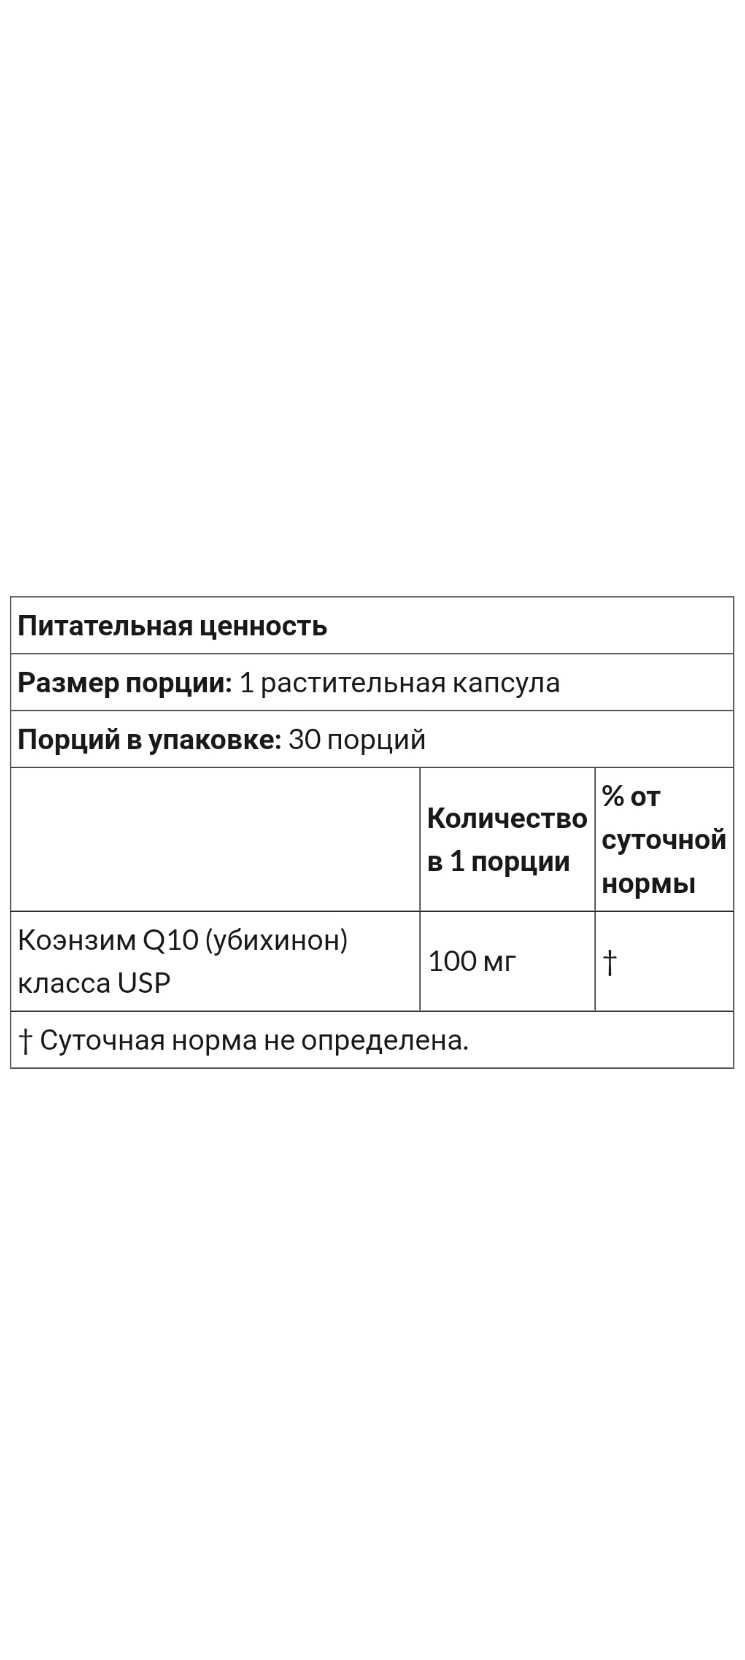 Коэнзим Q10, 100 мг, США, коензим Q 10, убихинон CoQ10, 30/120 капсул